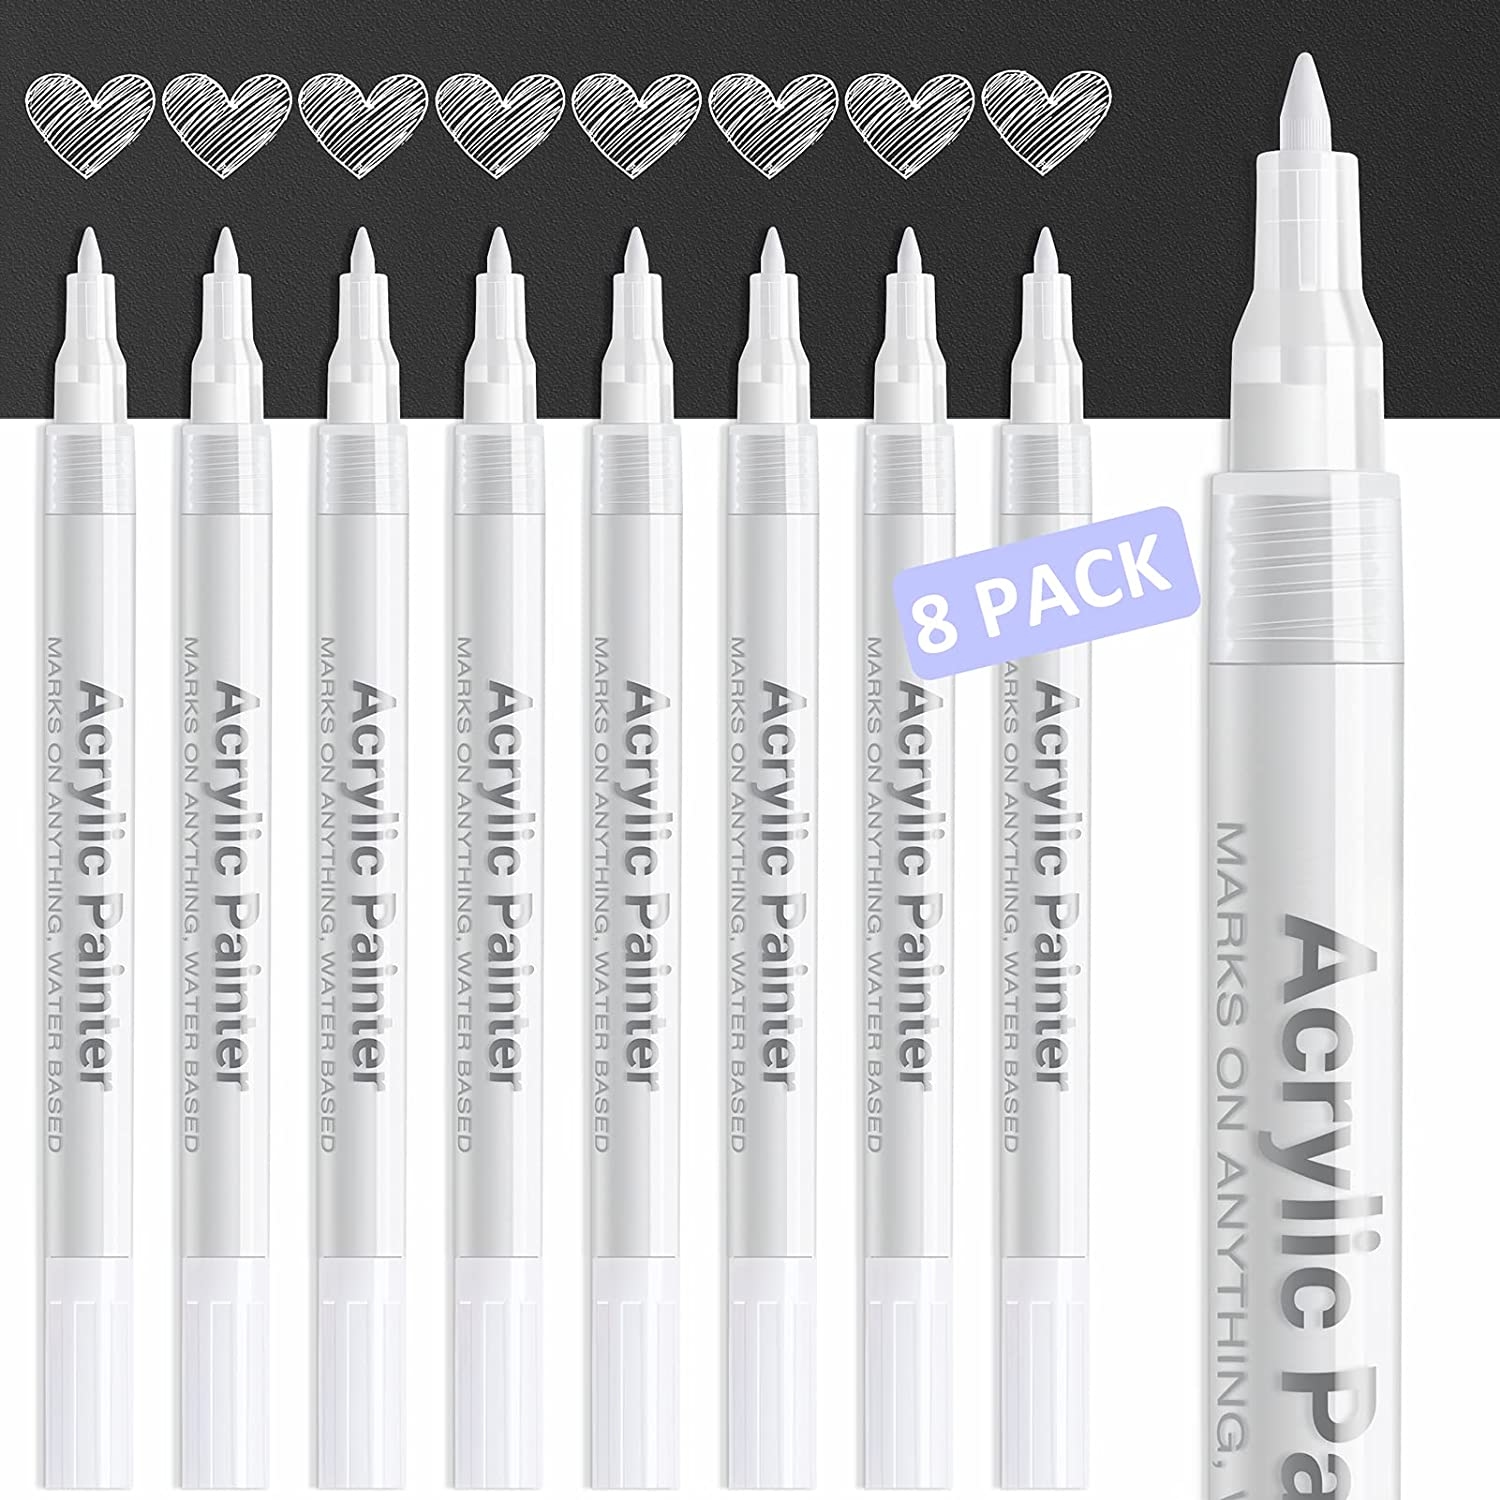  Mr Pen- White Paint Pen, 6 Pack, Water-Based, Acrylic Paint  Marker, White Paint Marker, White Pens For Art, White Markers For Black  Paper, White Paint Pen Medium Tip, White Fabric